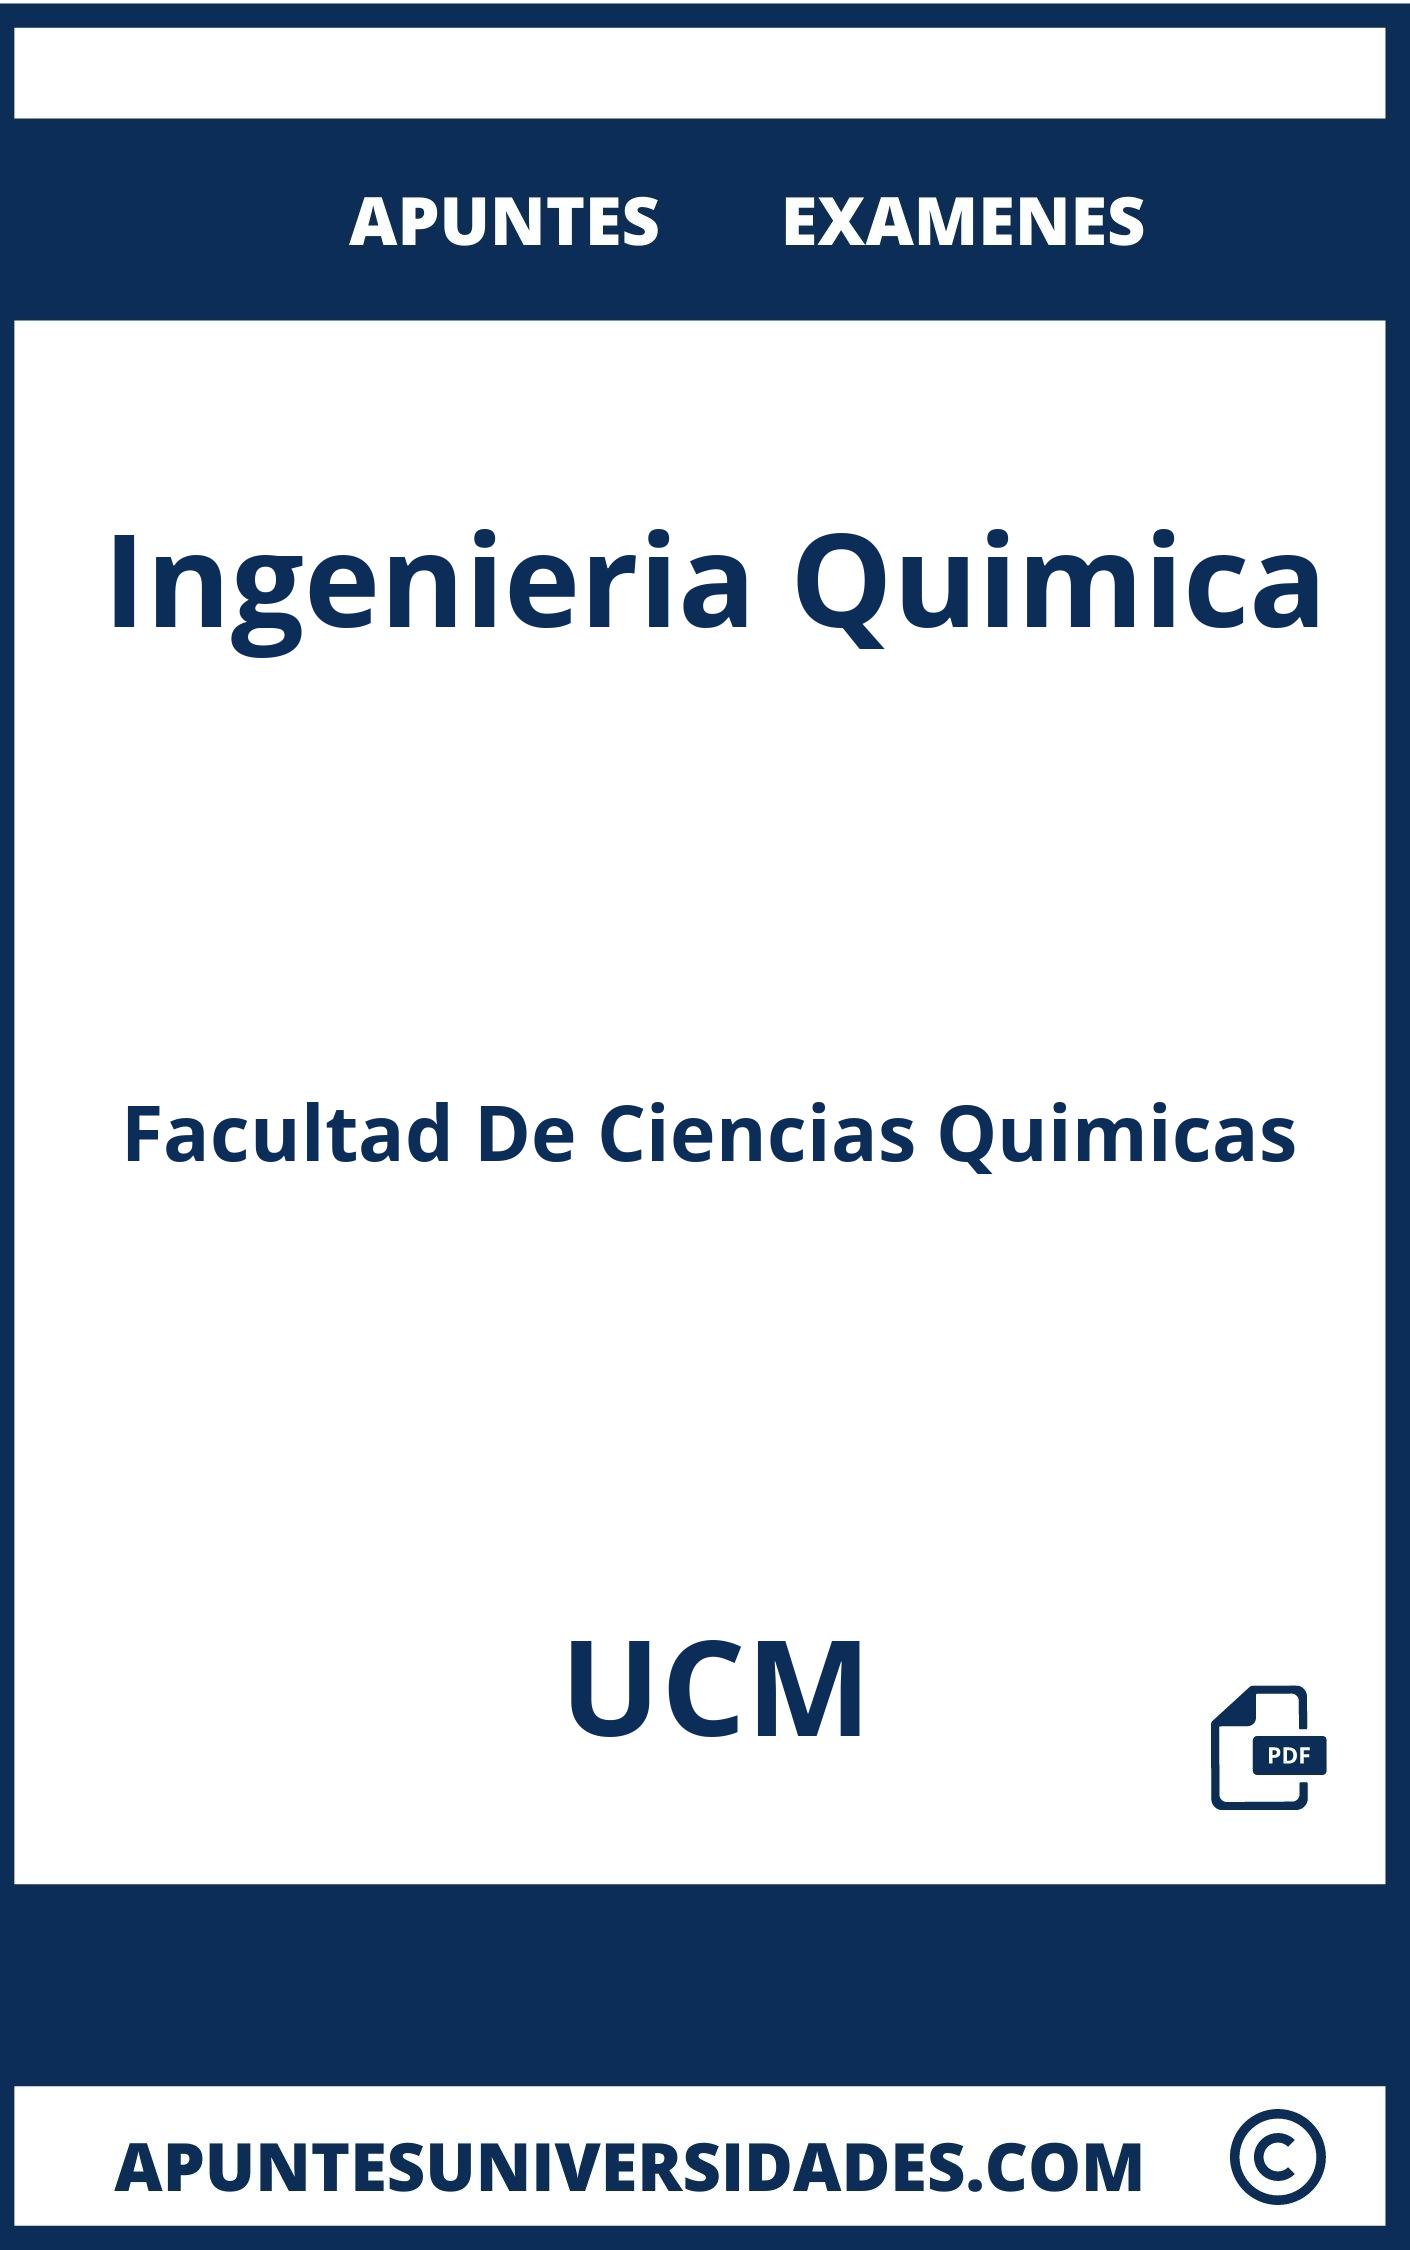 Ingenieria Quimica UCM Examenes Apuntes